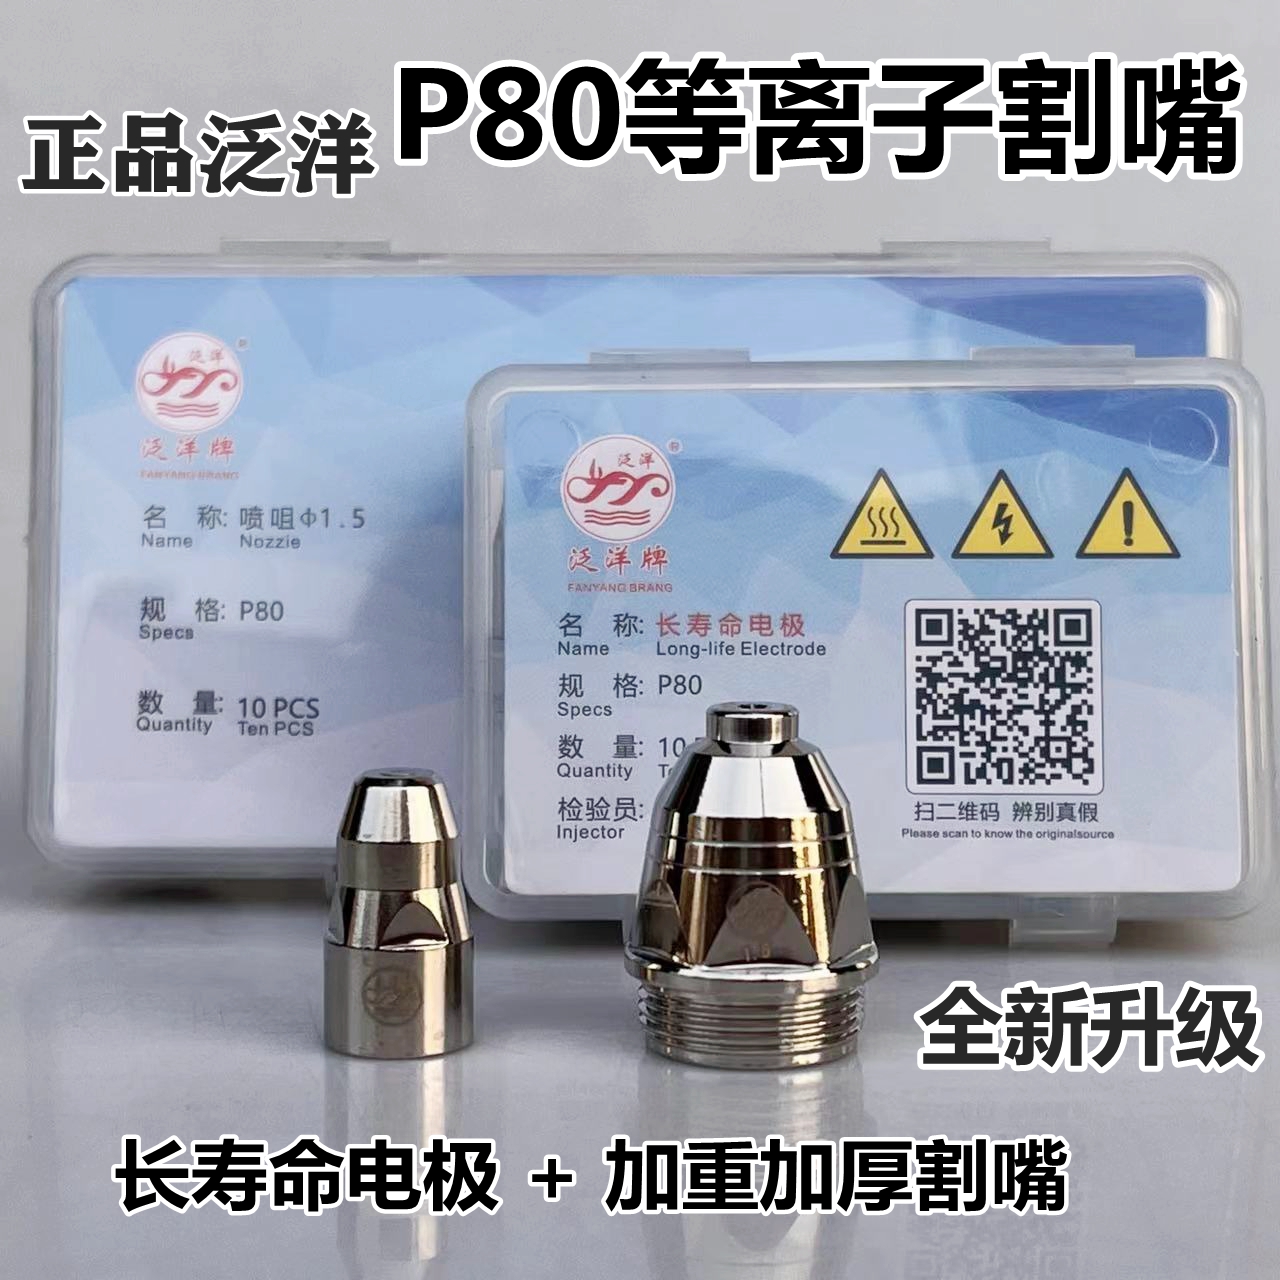 正品泛洋P80等离子割嘴长寿命电极喷嘴LGK100等离子切割机配件P80